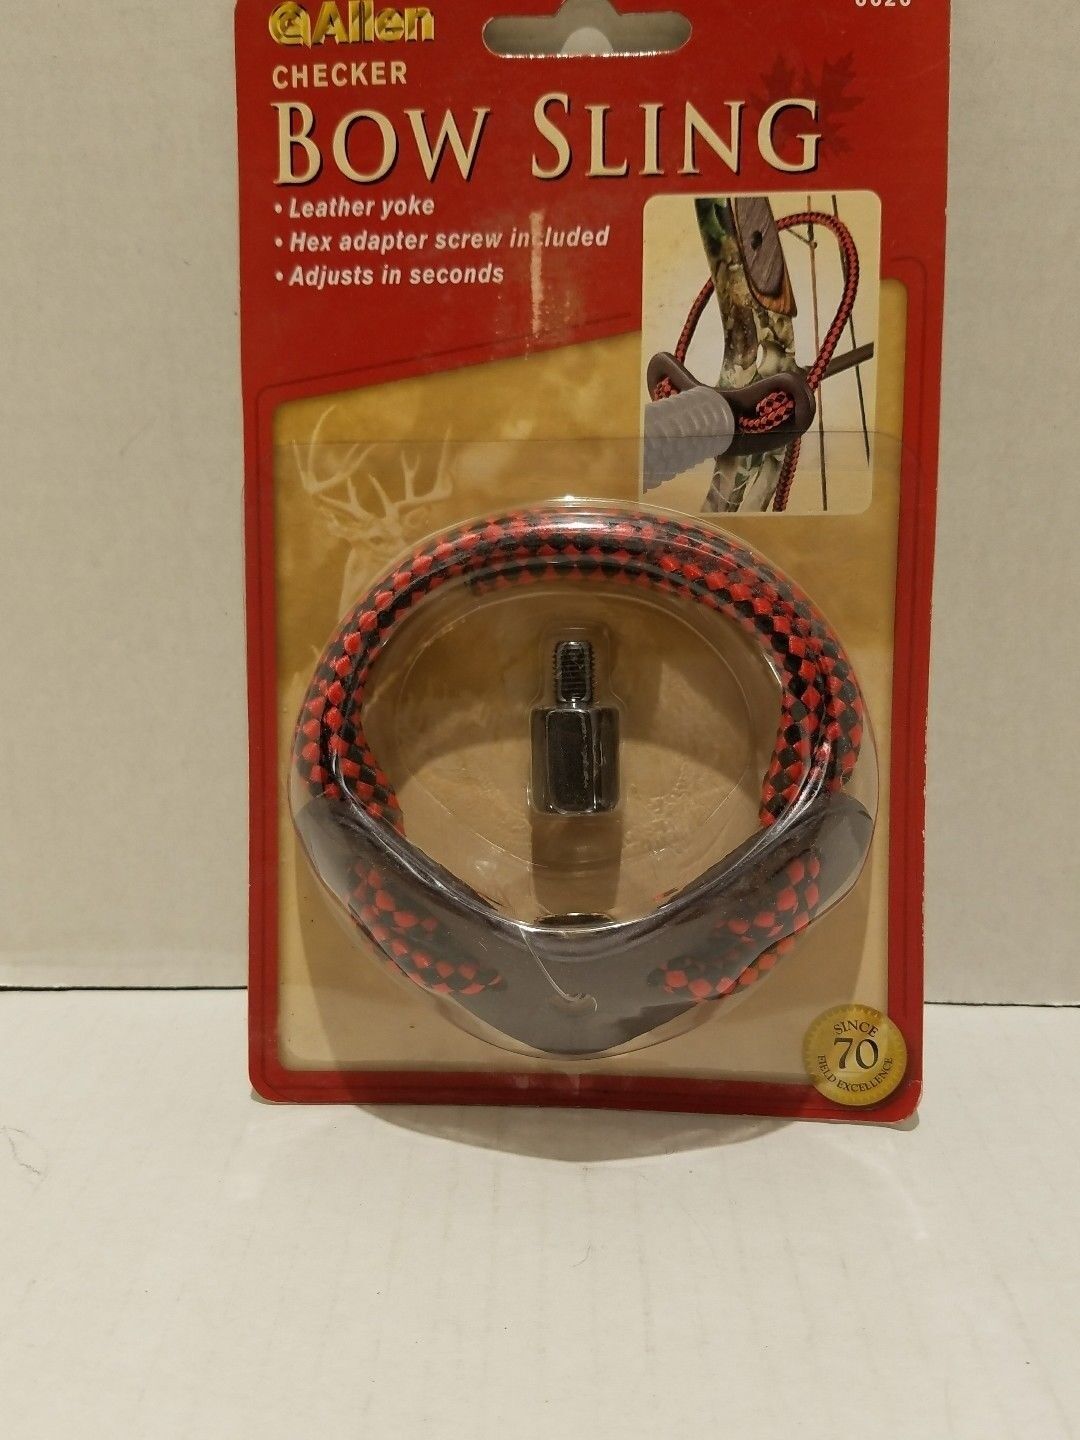 ALLEN Checker Bow Wrist Sling - Red -Leather Yoke - 6626 - Lot of 14 Allen 6626